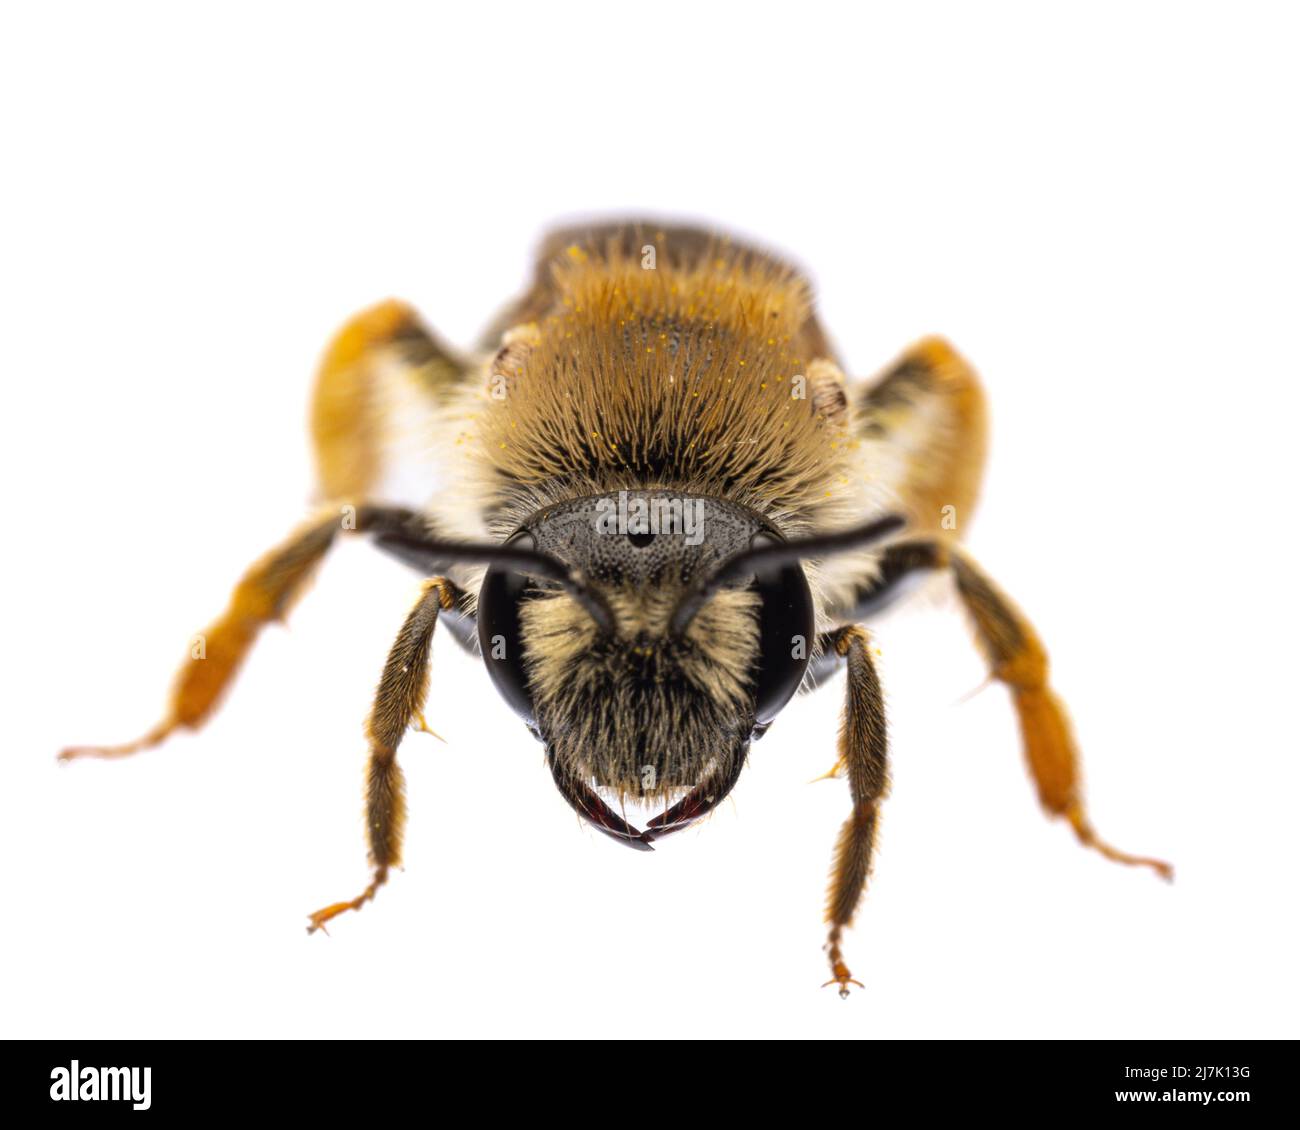 Insectes d'europe - abeilles: Vue de face - tête de femelle Andrena haemorrhoa (rotschopfige Sandbiene allemand) isolé sur fond blanc Banque D'Images